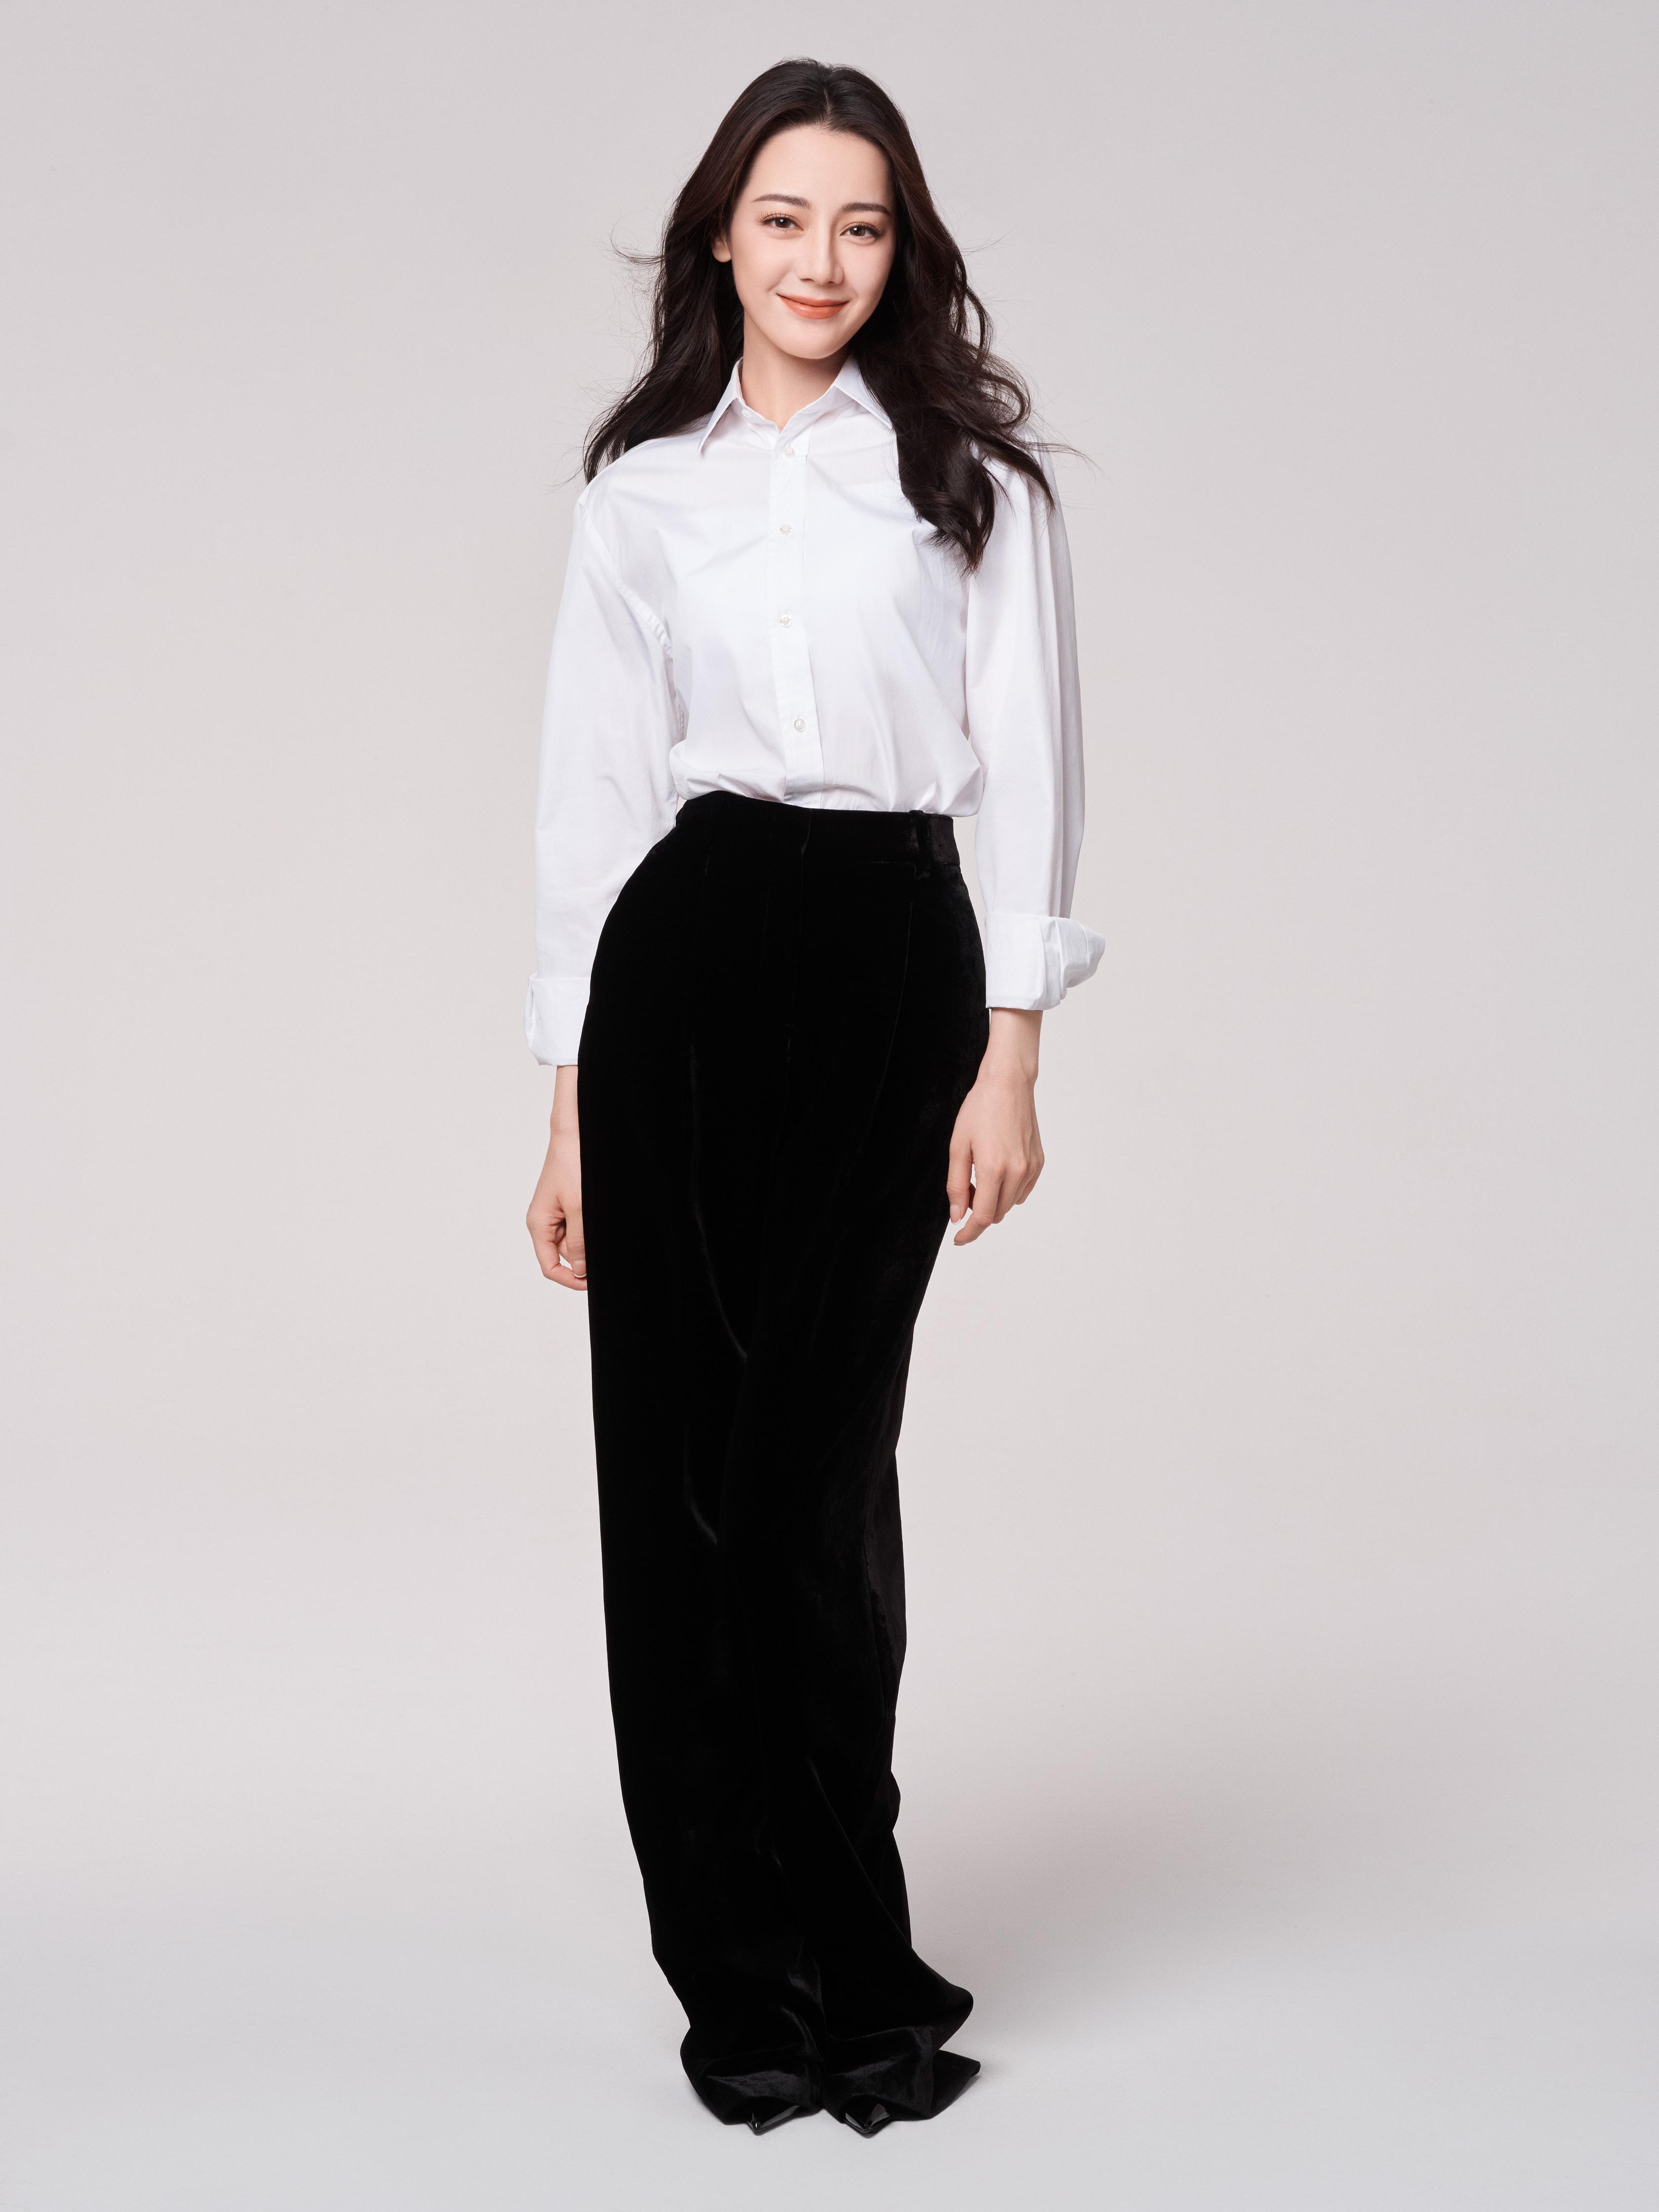 迪丽热巴白色衬衫加黑色工装职业裤写真 极简主义透露随性风格,1 (000)